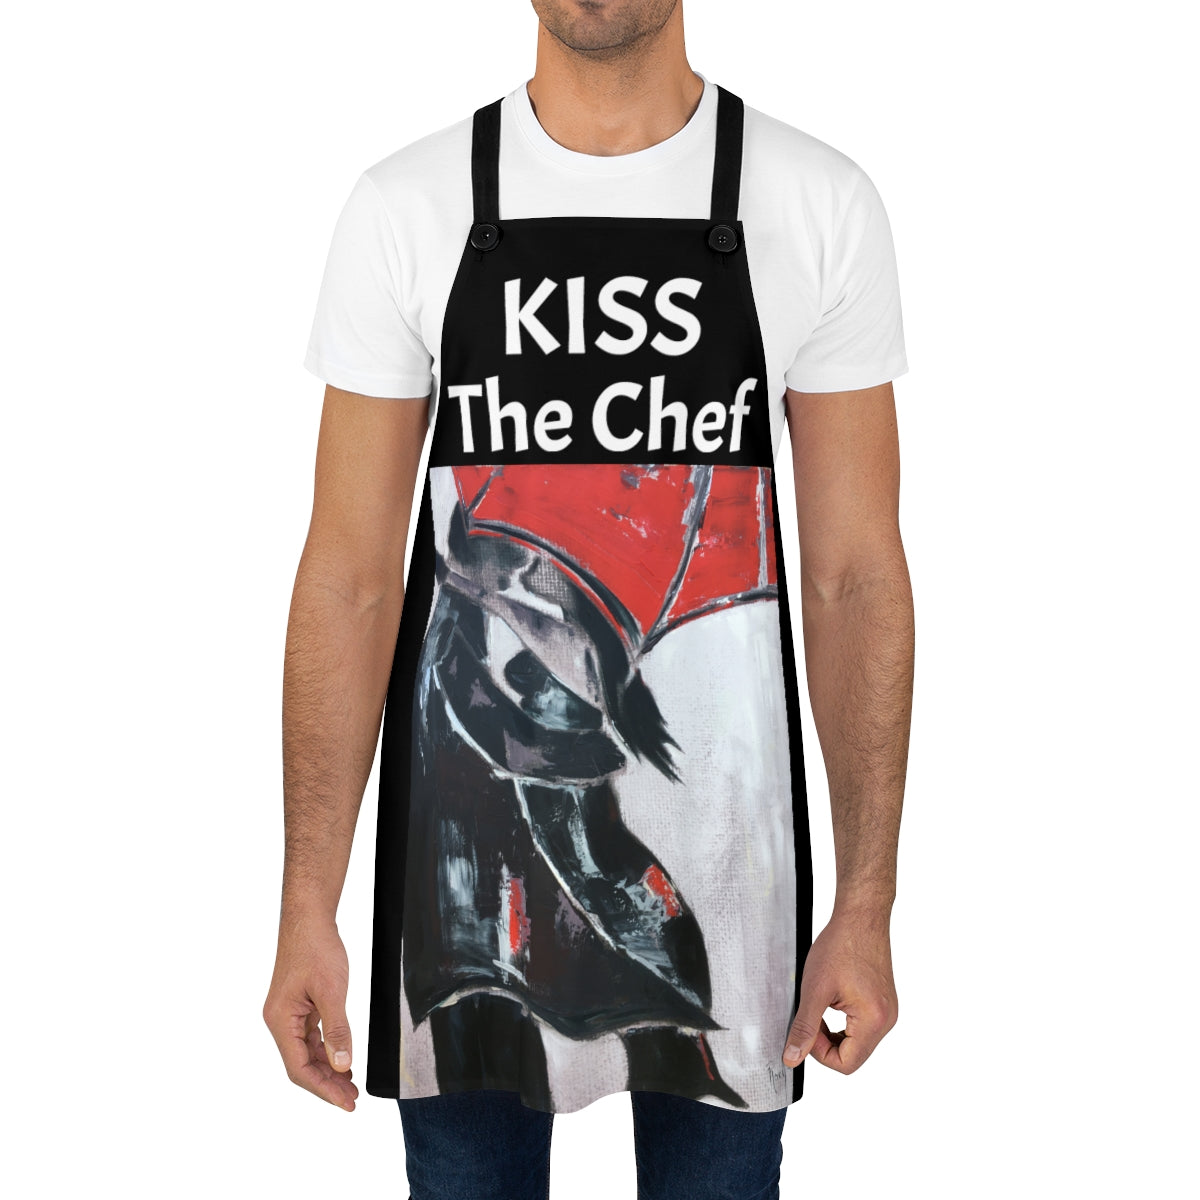 Besa al chef con un delantal de cocina negro con amantes originales bajo un paraguas rojo